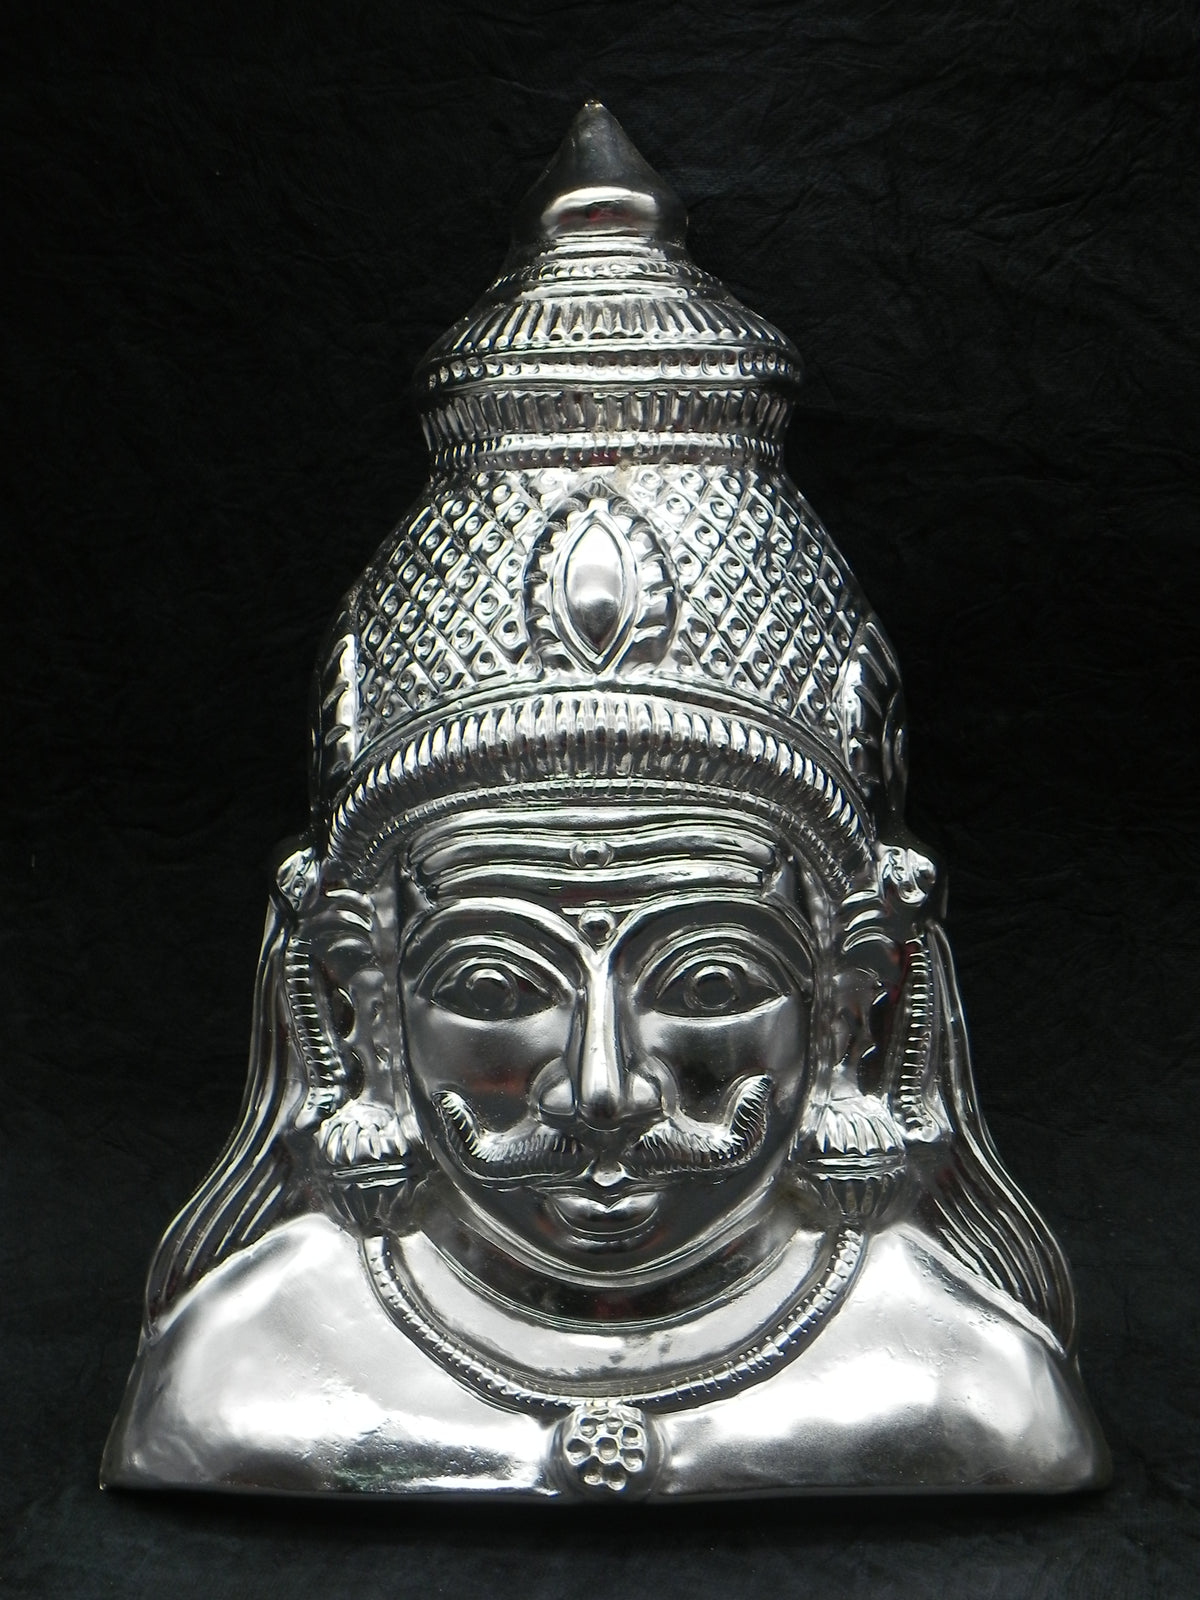 Shaneshwara / Veerabhadra / Munishwara / Kalabairava / Shiva  Brass Face [ Height - 11.5 inch]